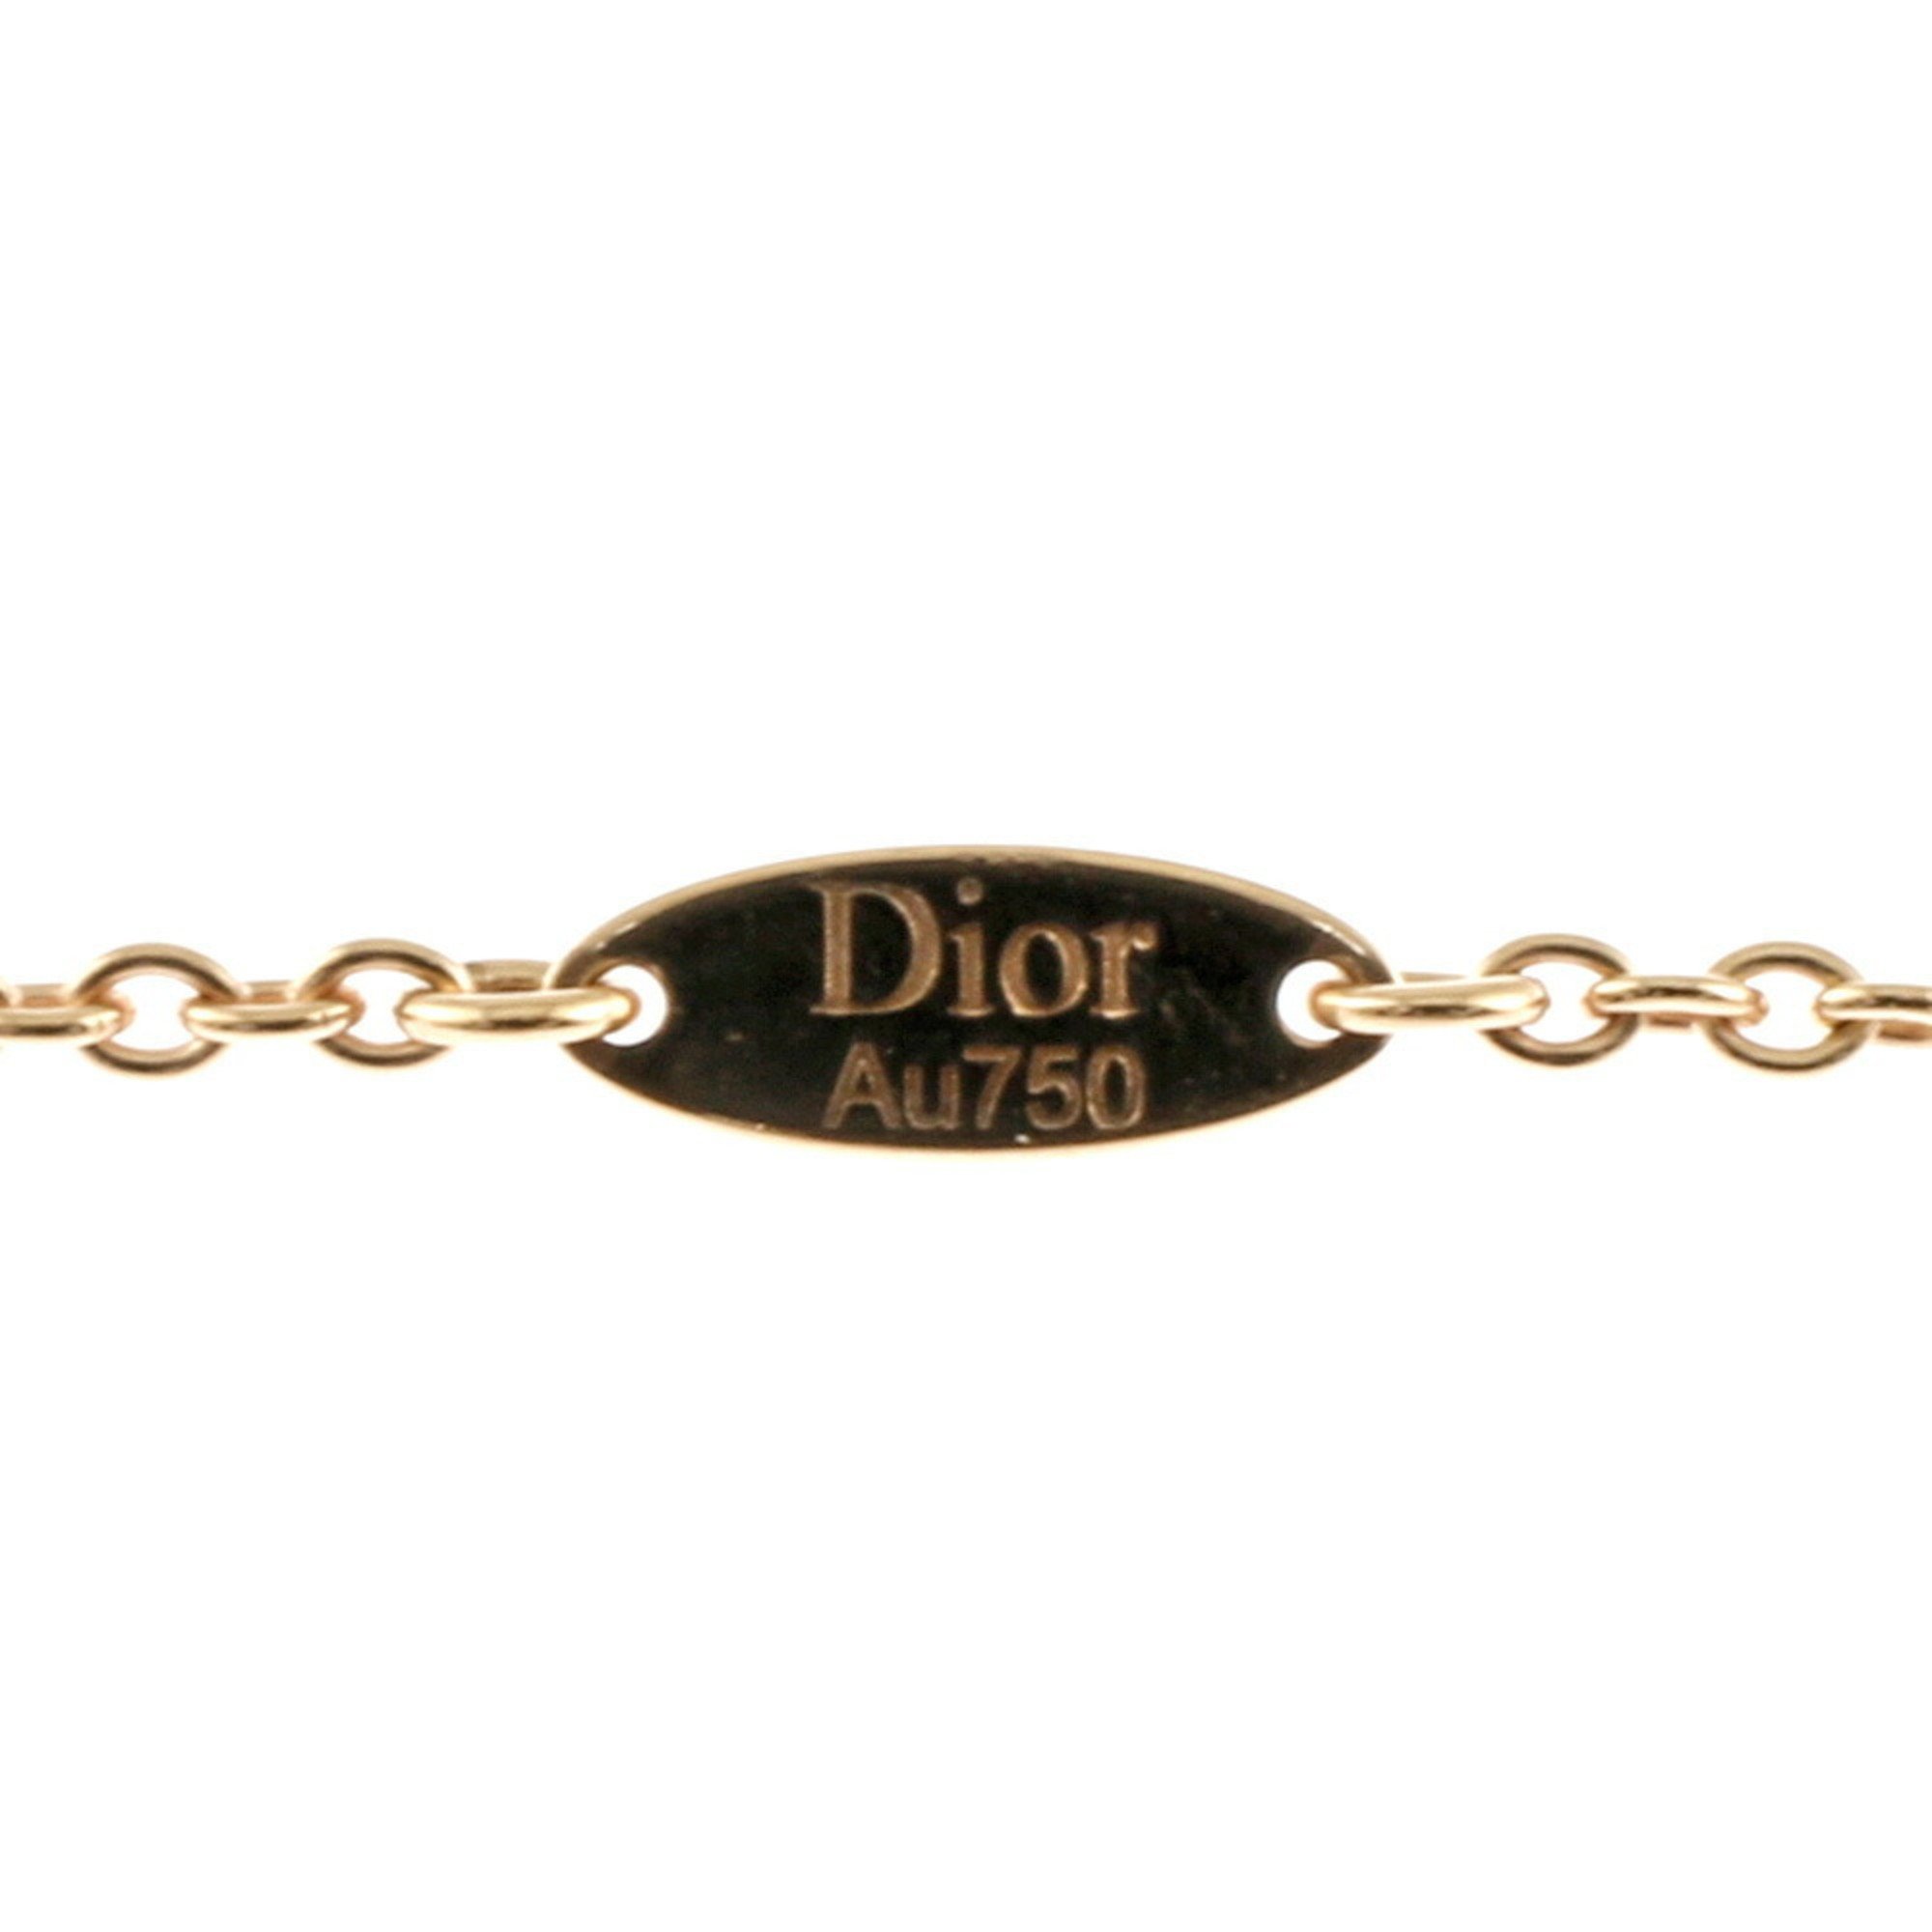 Christian Dior Necklace 18K Onyx Diamond Women's BRJ10000000124947